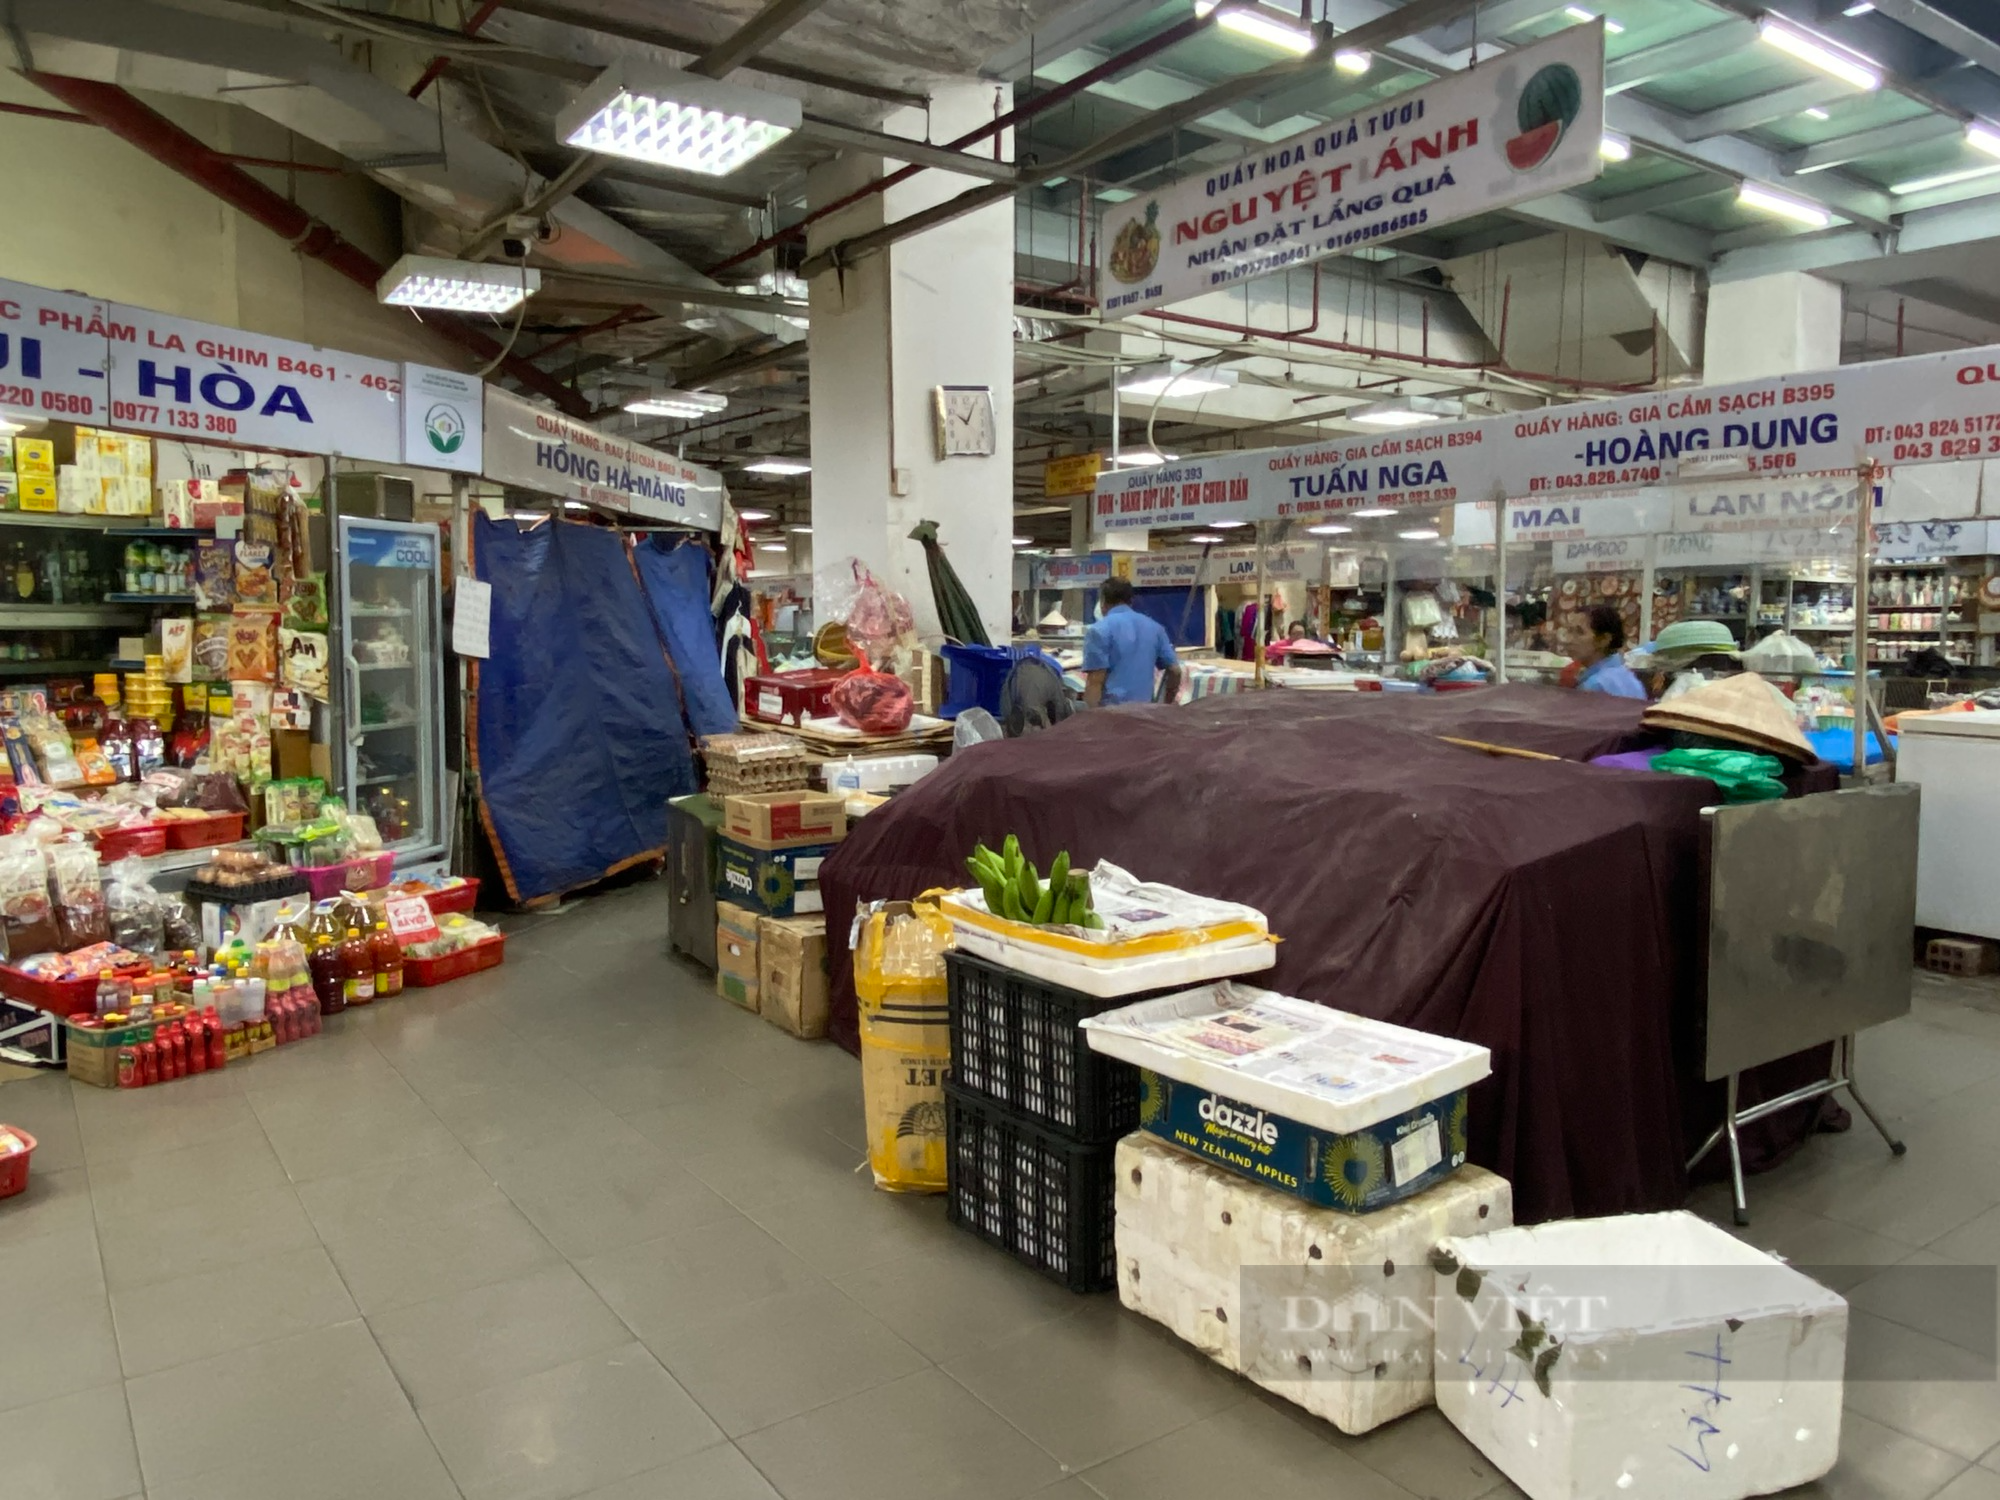 Khu chợ nổi tiếng tại trung tâm Thủ đô ế ẩm, tiểu thương ngồi đan len, lướt điện thoại - Ảnh 6.